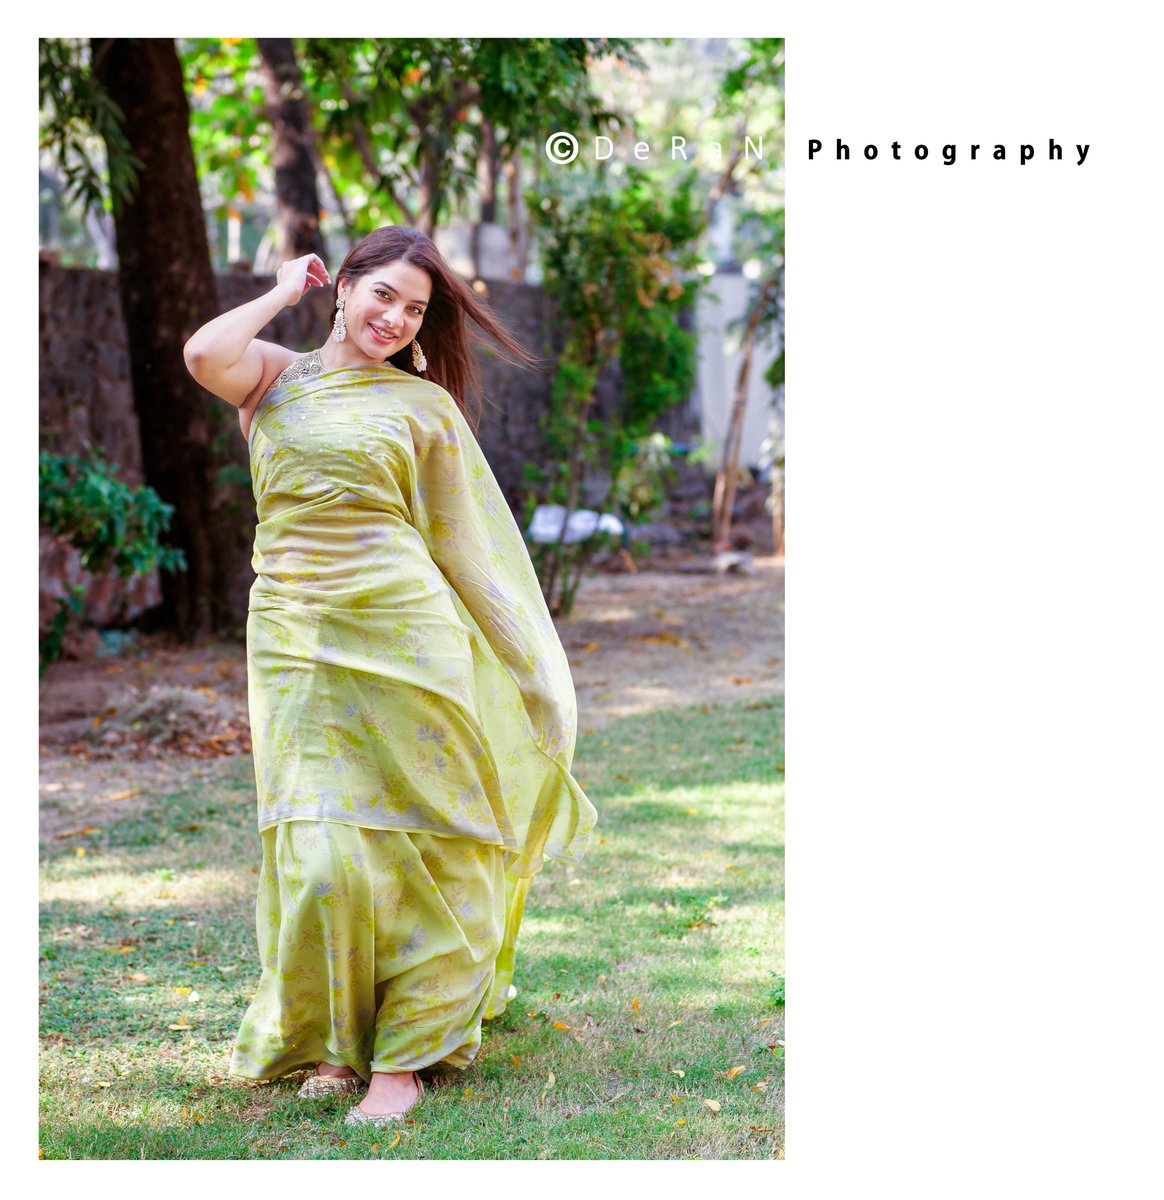 #tanyahope #tamilactress #teluguactress #fashionblogger #southindianactress #streetsmart #eyemakeup #glamshoot #sexyportrait #fashionportrait #portraitphotography #PanasonicLumix #lumixgh9 #lumix #ChangingPhotography #lumixindia #lumixphotography #DeRaN #deranphotography